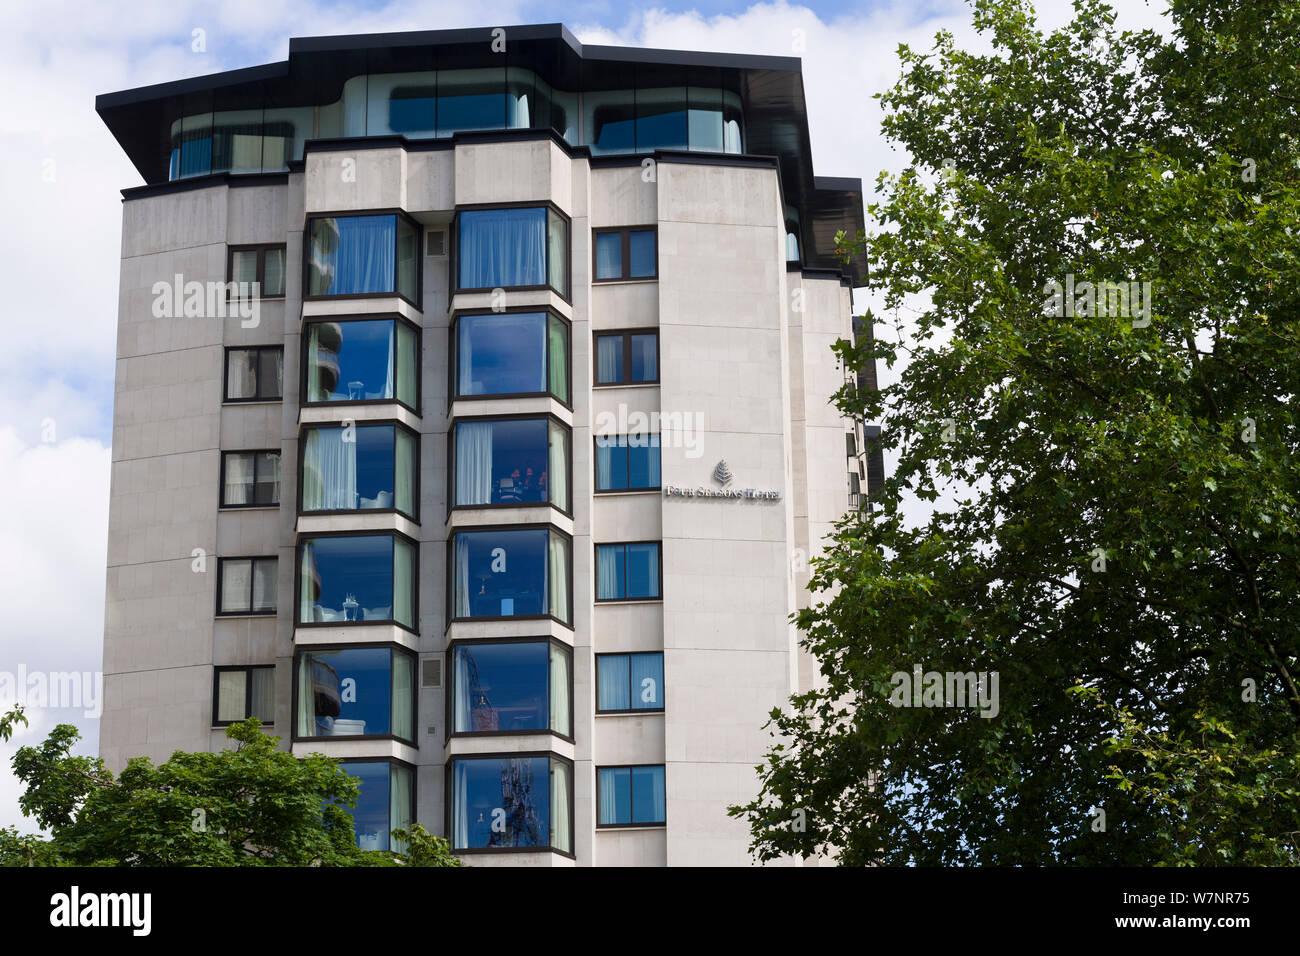 L'hôtel 5 étoiles, l'hôtel Four Seasons, Hamilton Place, Park Lane, London, UK 19 Jun 2018 Banque D'Images